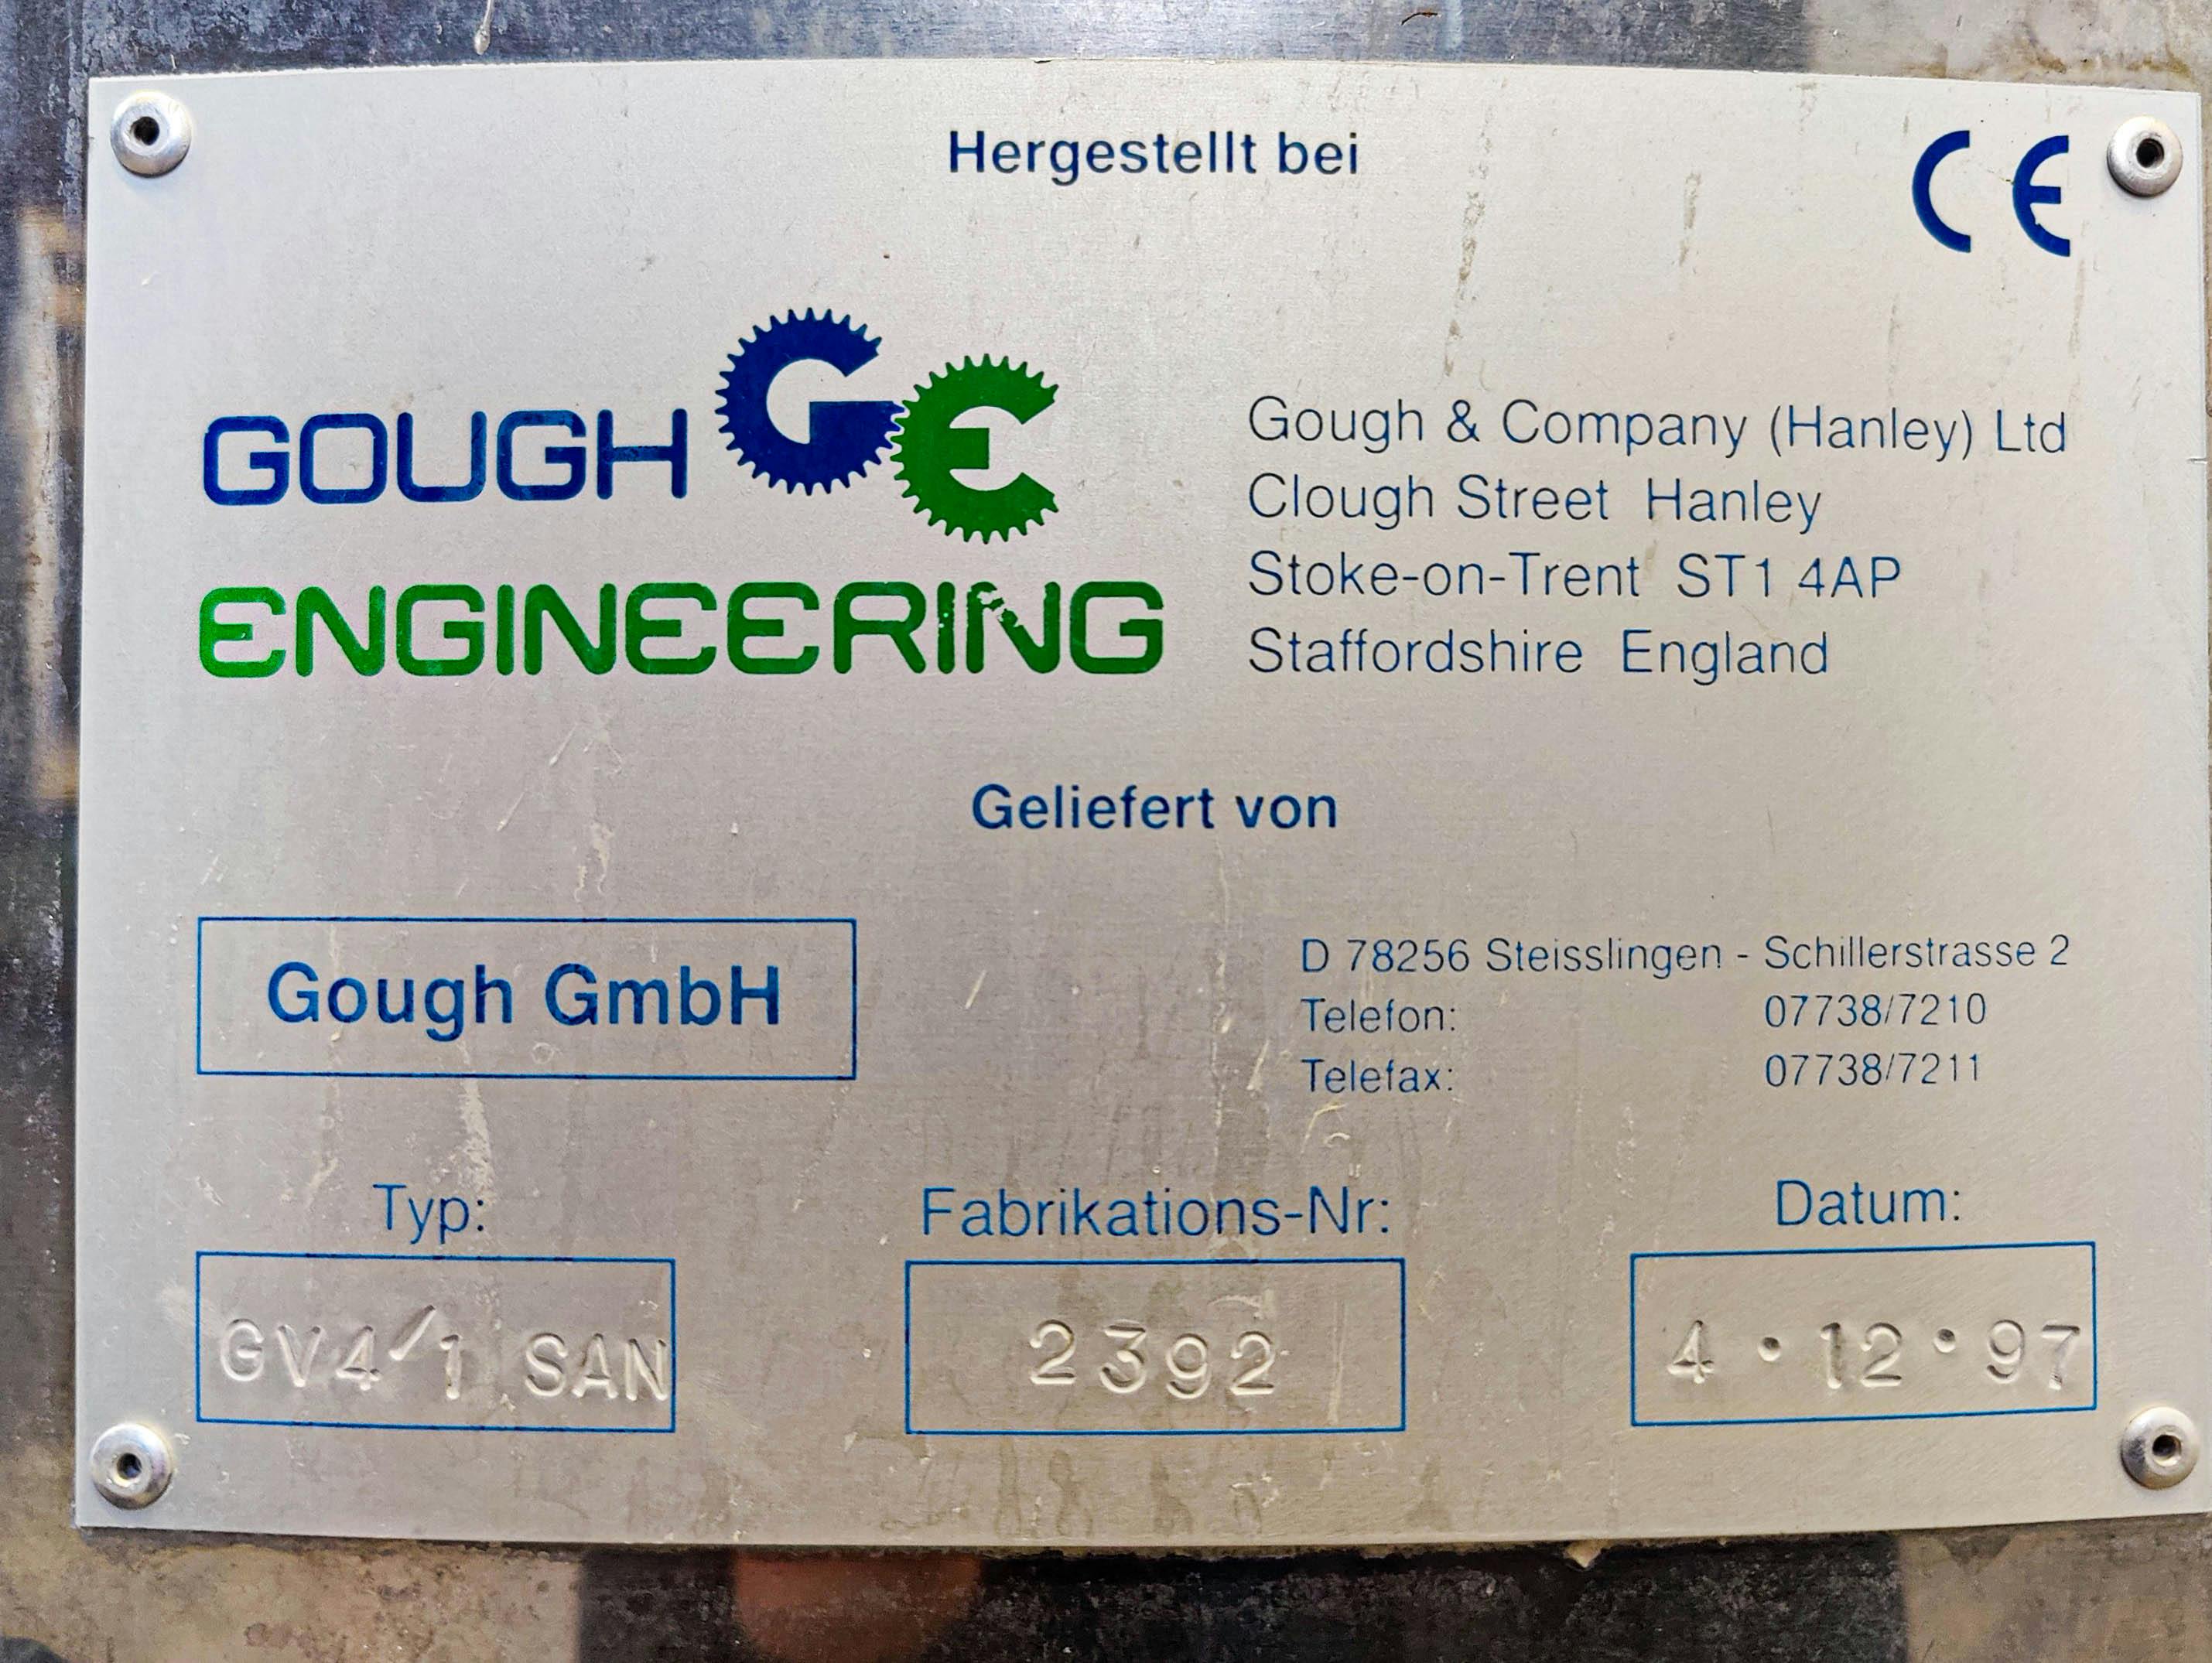 Gough & Co GV4/1 SAN - Вибрационное сито - image 9